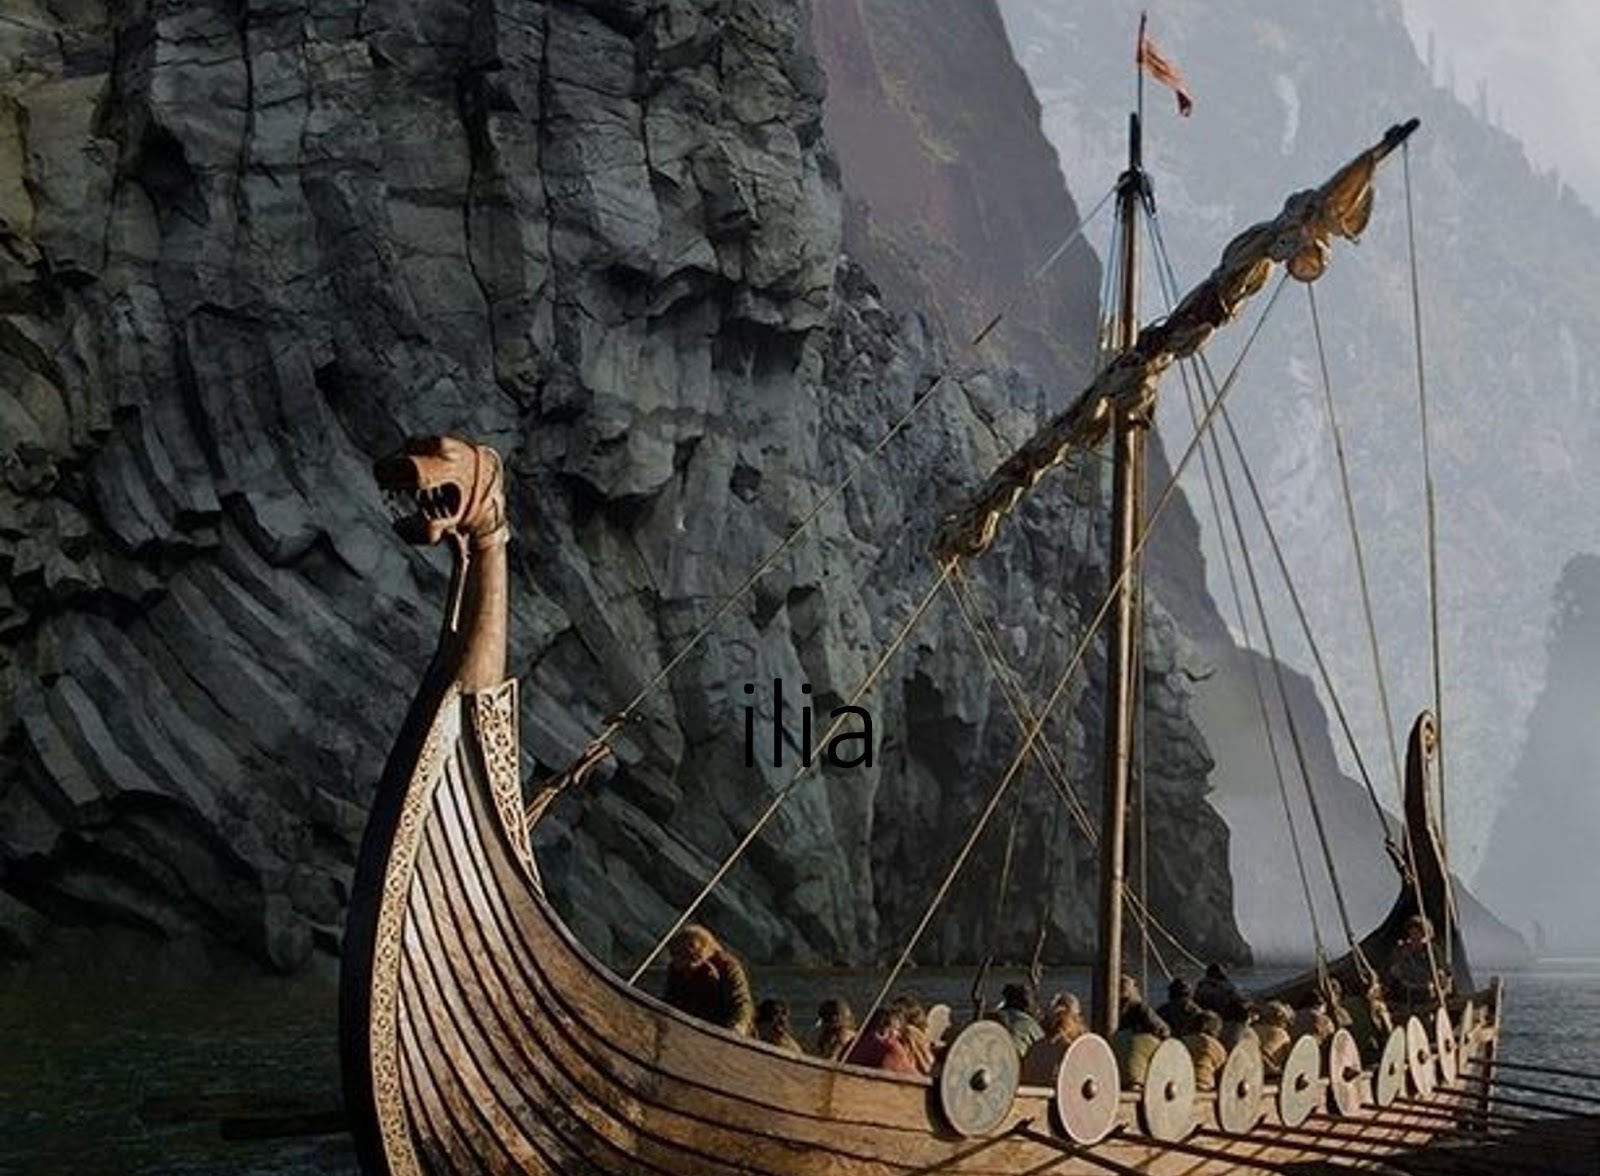 NÚCLEO DE ESTUDOS VIKINGS E ESCANDINAVOS (NEVE): História, anacronismos e  ficção na série Vikings (2013-2020)